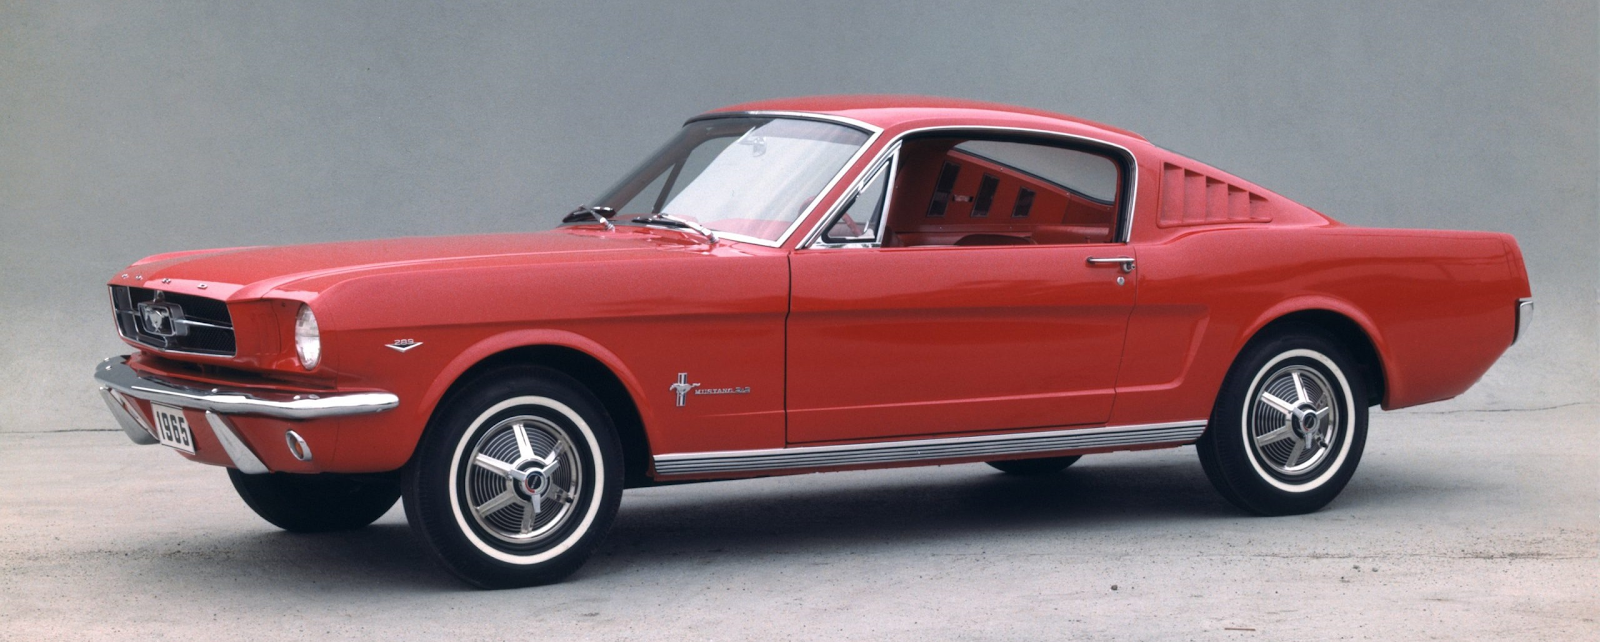 Ford Mustang-Bild mit freundlicher Genehmigung der Ford Motor Company